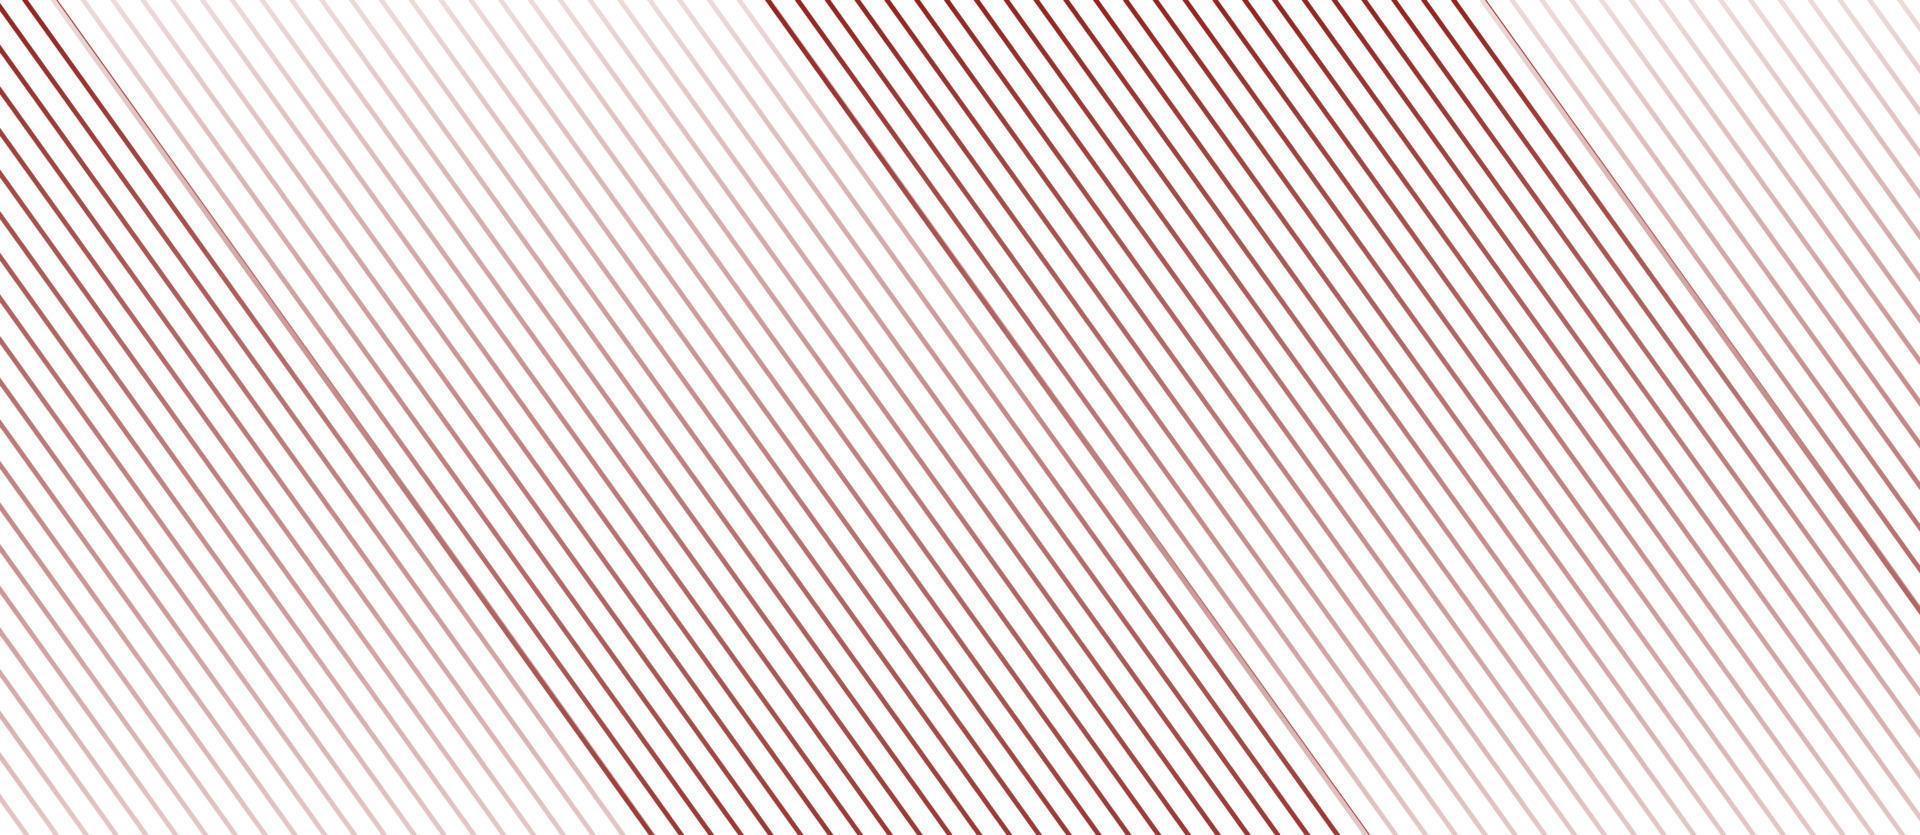 design de fundo abstrato em espiral. linha fina no fundo branco ondulado vetor